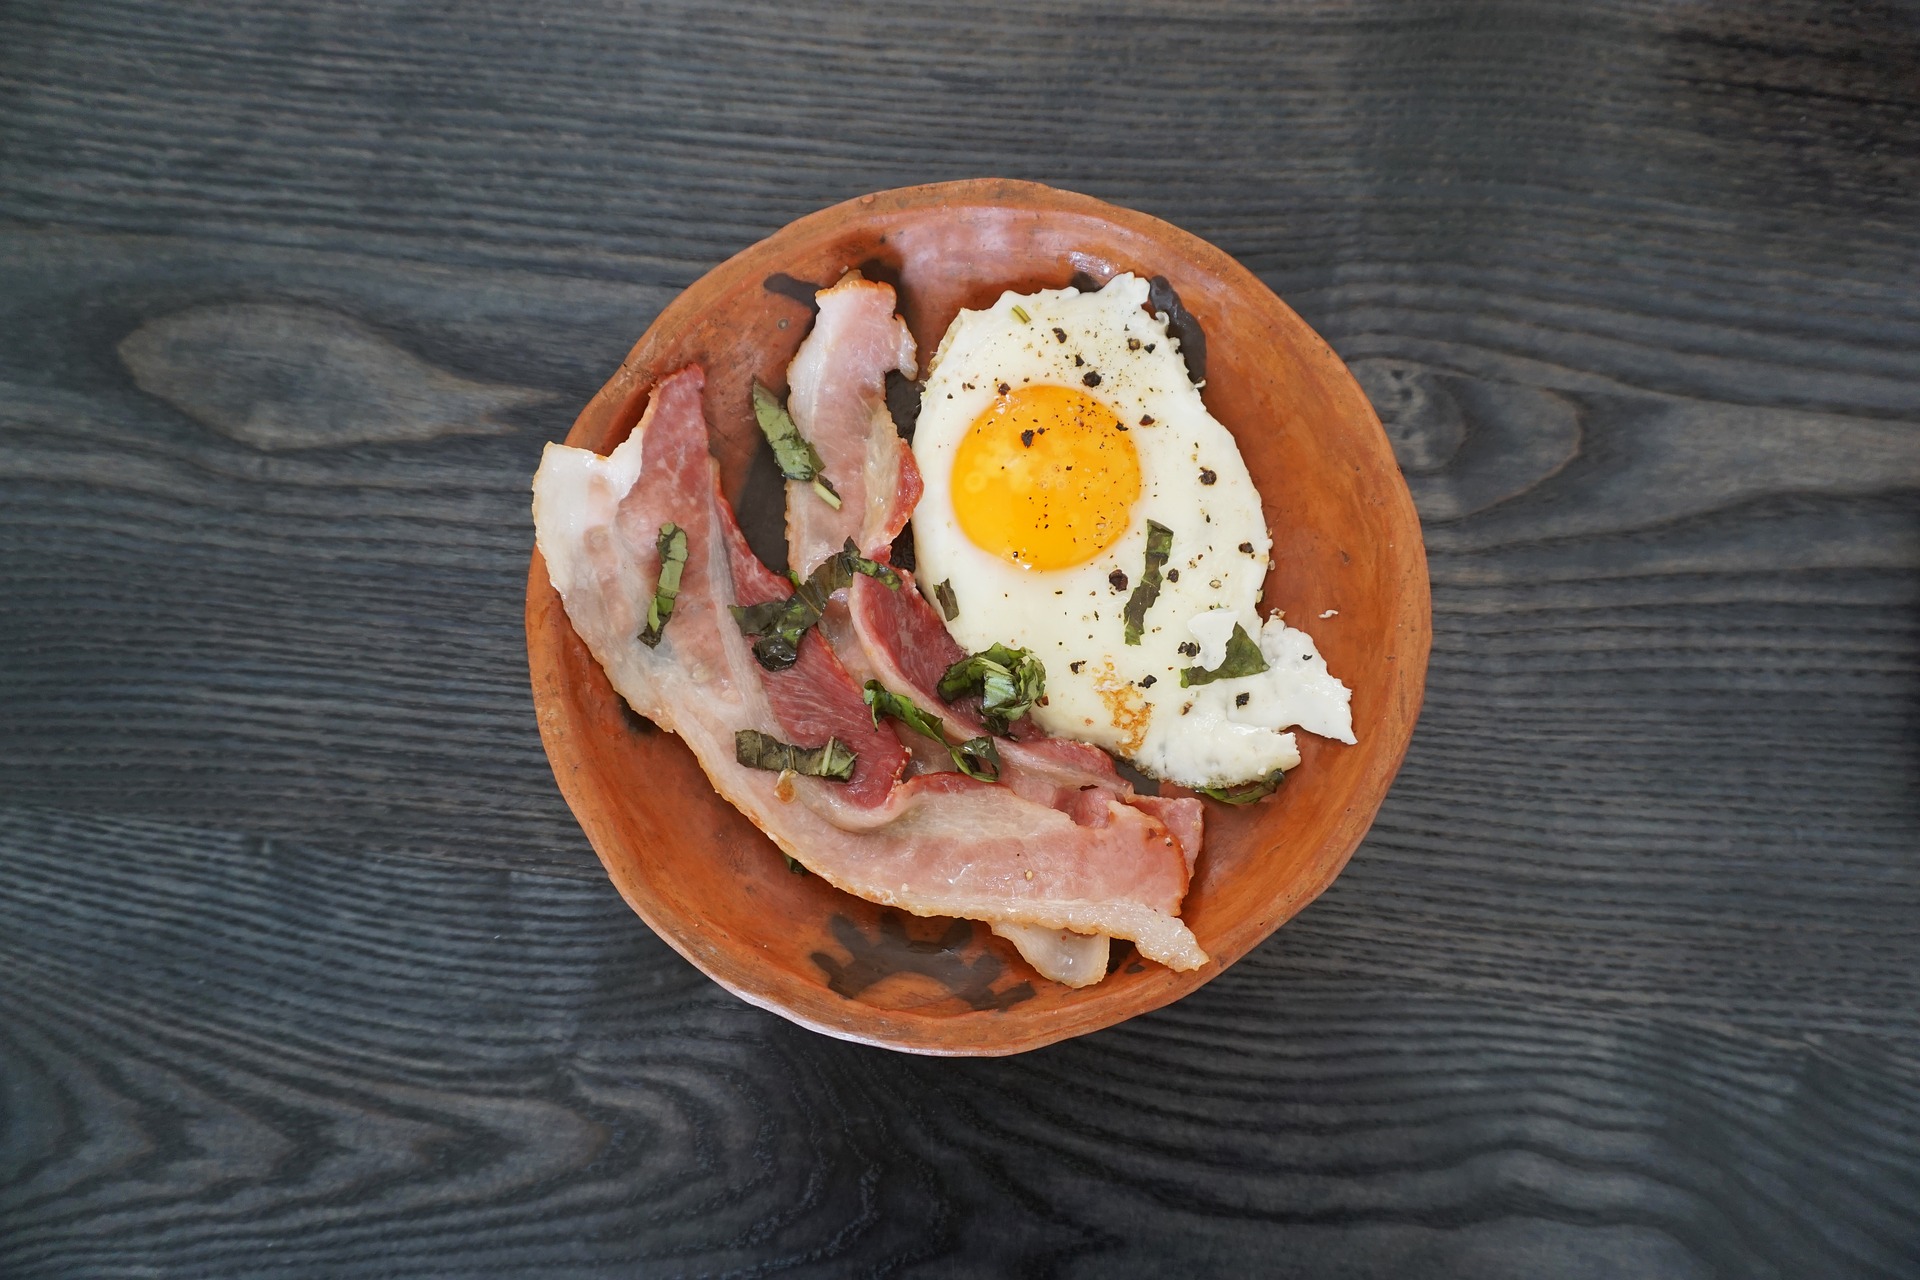 Domácí slanina se hodí zejména k přípravě snídaně spolu s volským okem.